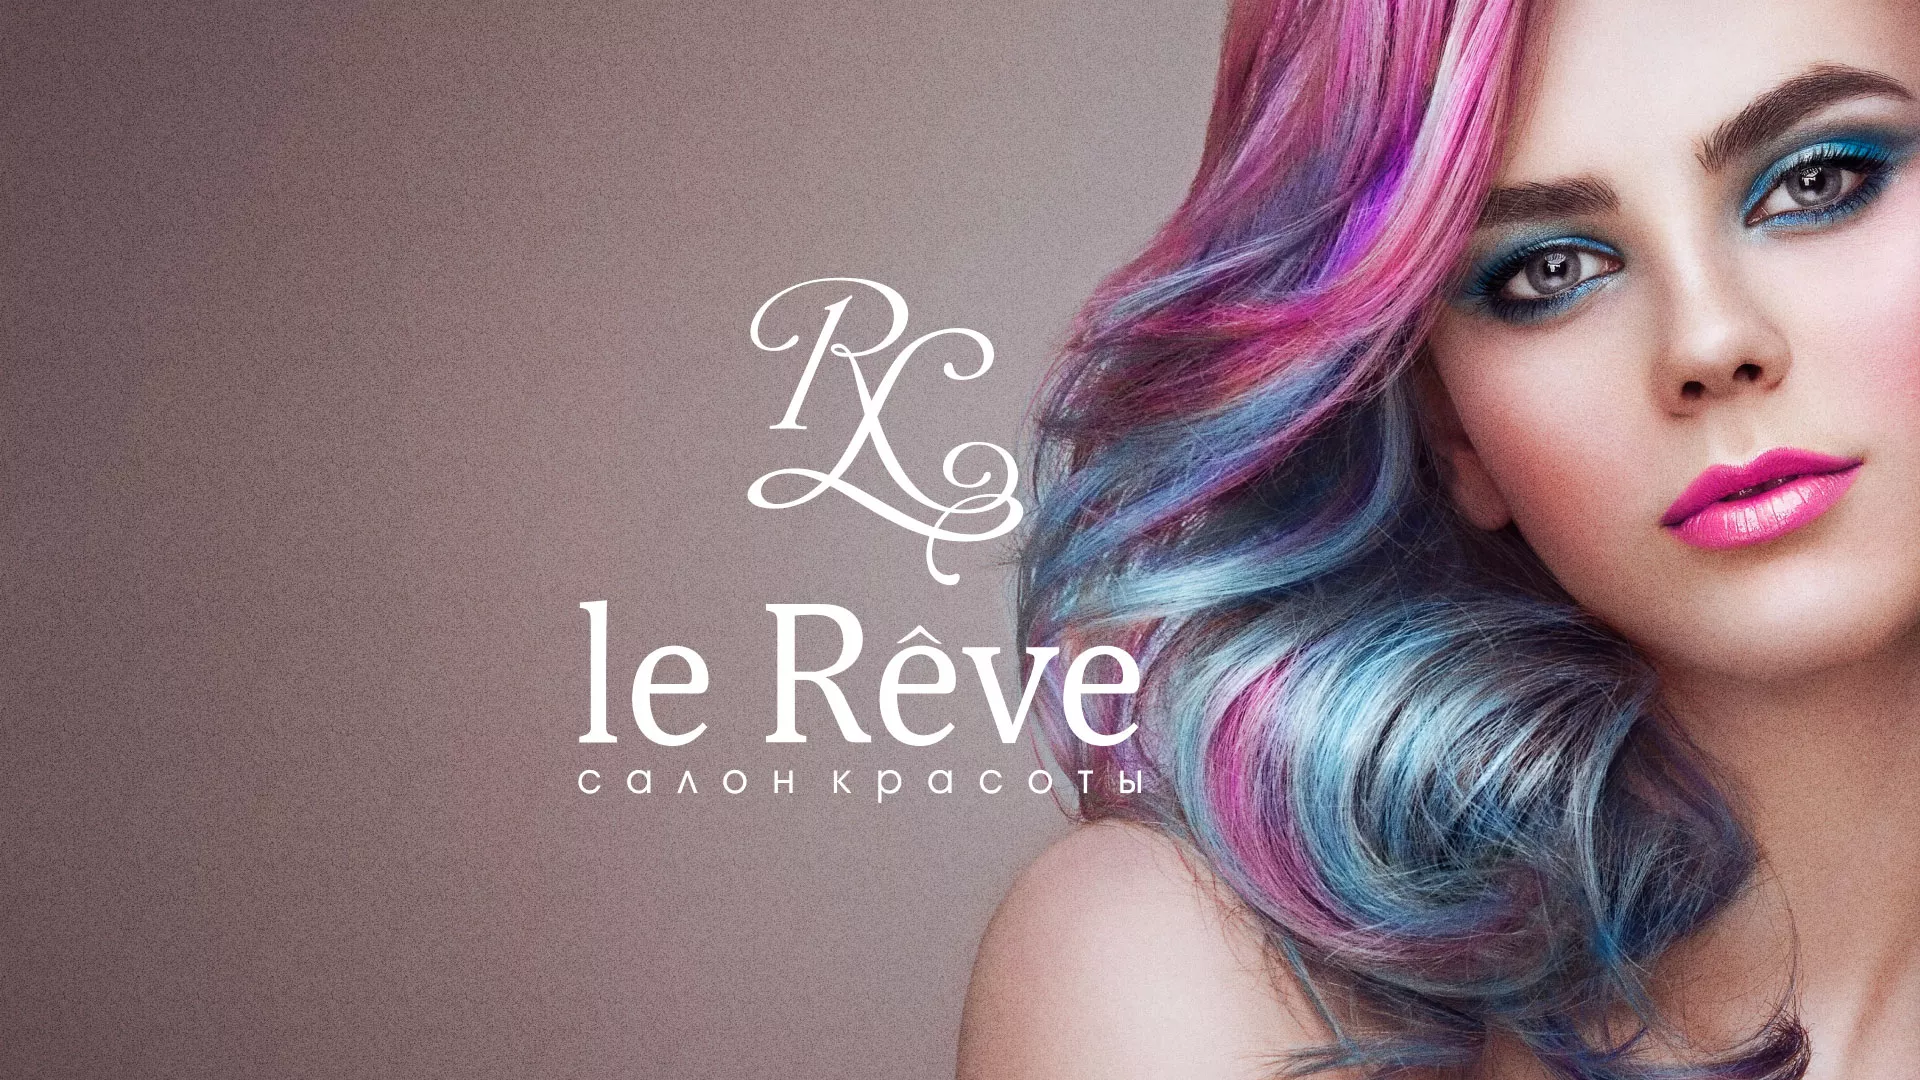 Создание сайта для салона красоты «Le Reve» в Черняховске